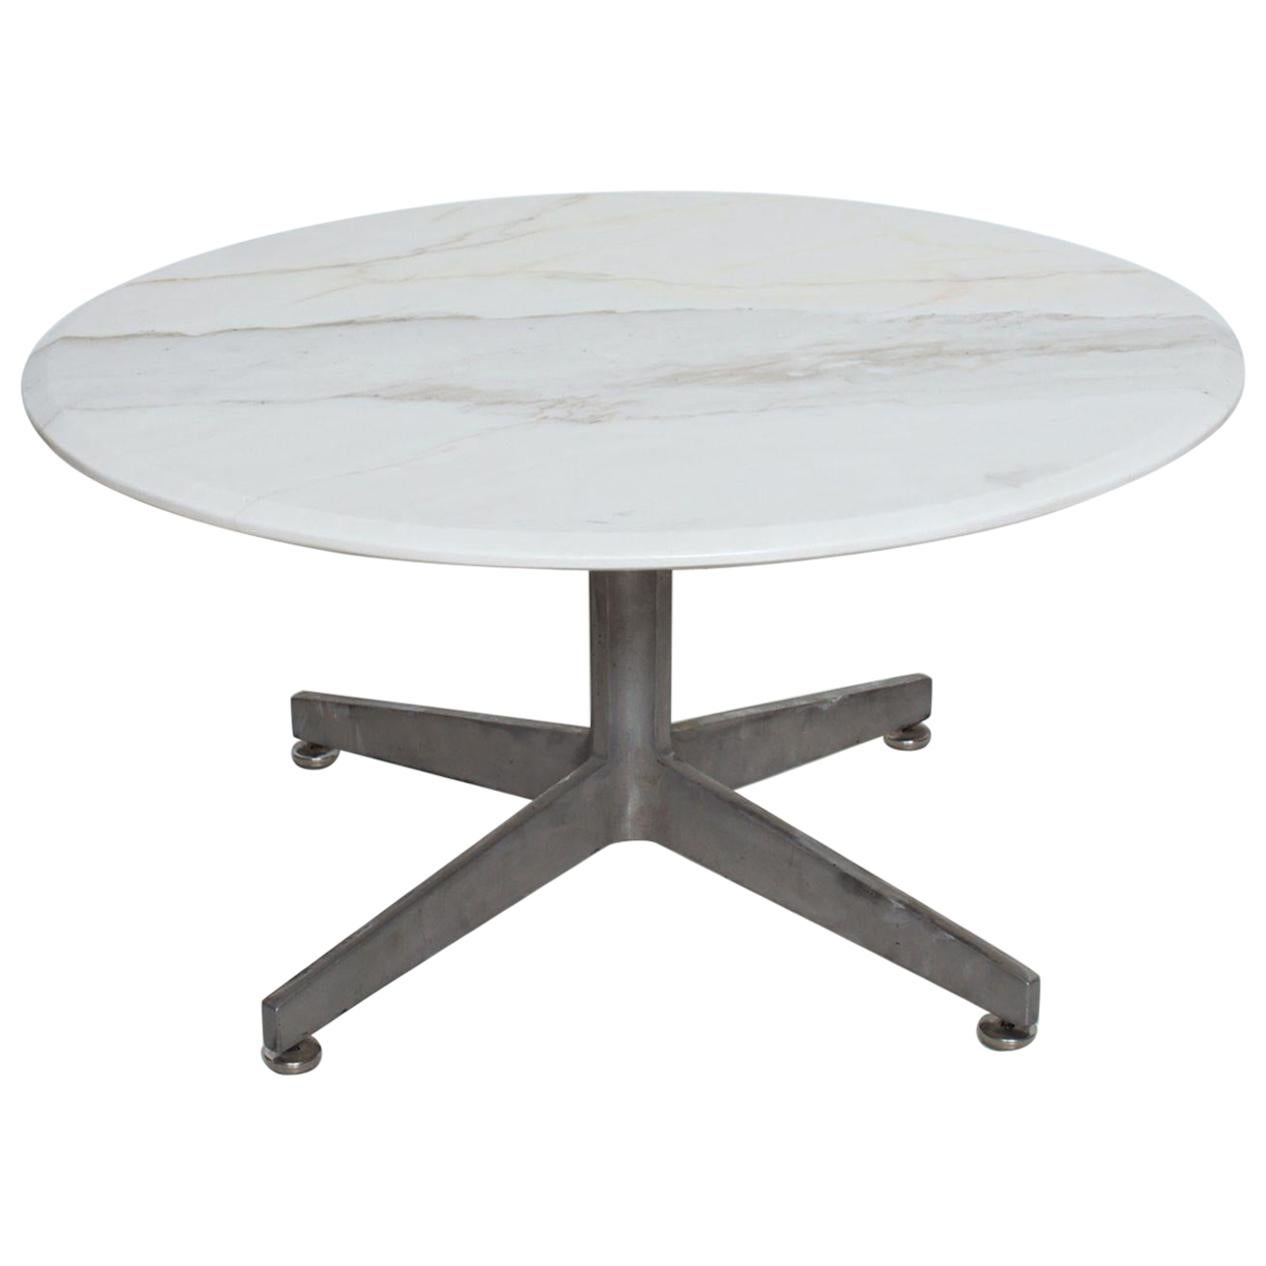  Table basse ronde en marbre avec base en étoile en aluminium, style Knoll, années 1960 en vente